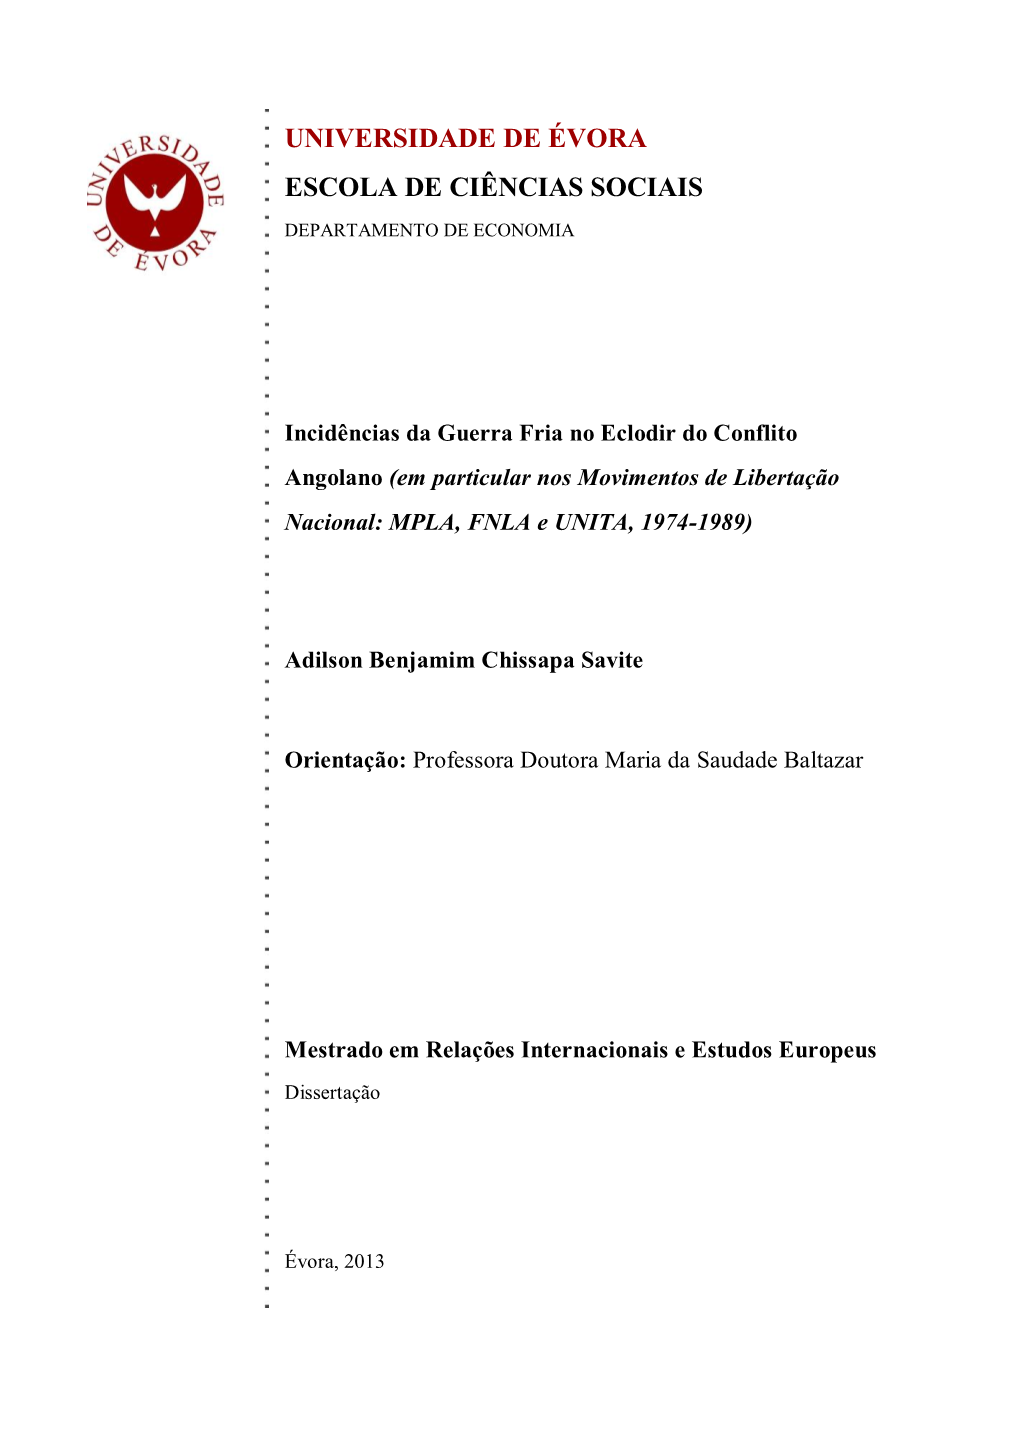 Incidências Da Guerra Fria No Eclodir Do Conflito Angolano (Em Particular Nos Movimentos De Libertação Nacional: MPLA, FNLA E UNITA, 1974-1989)